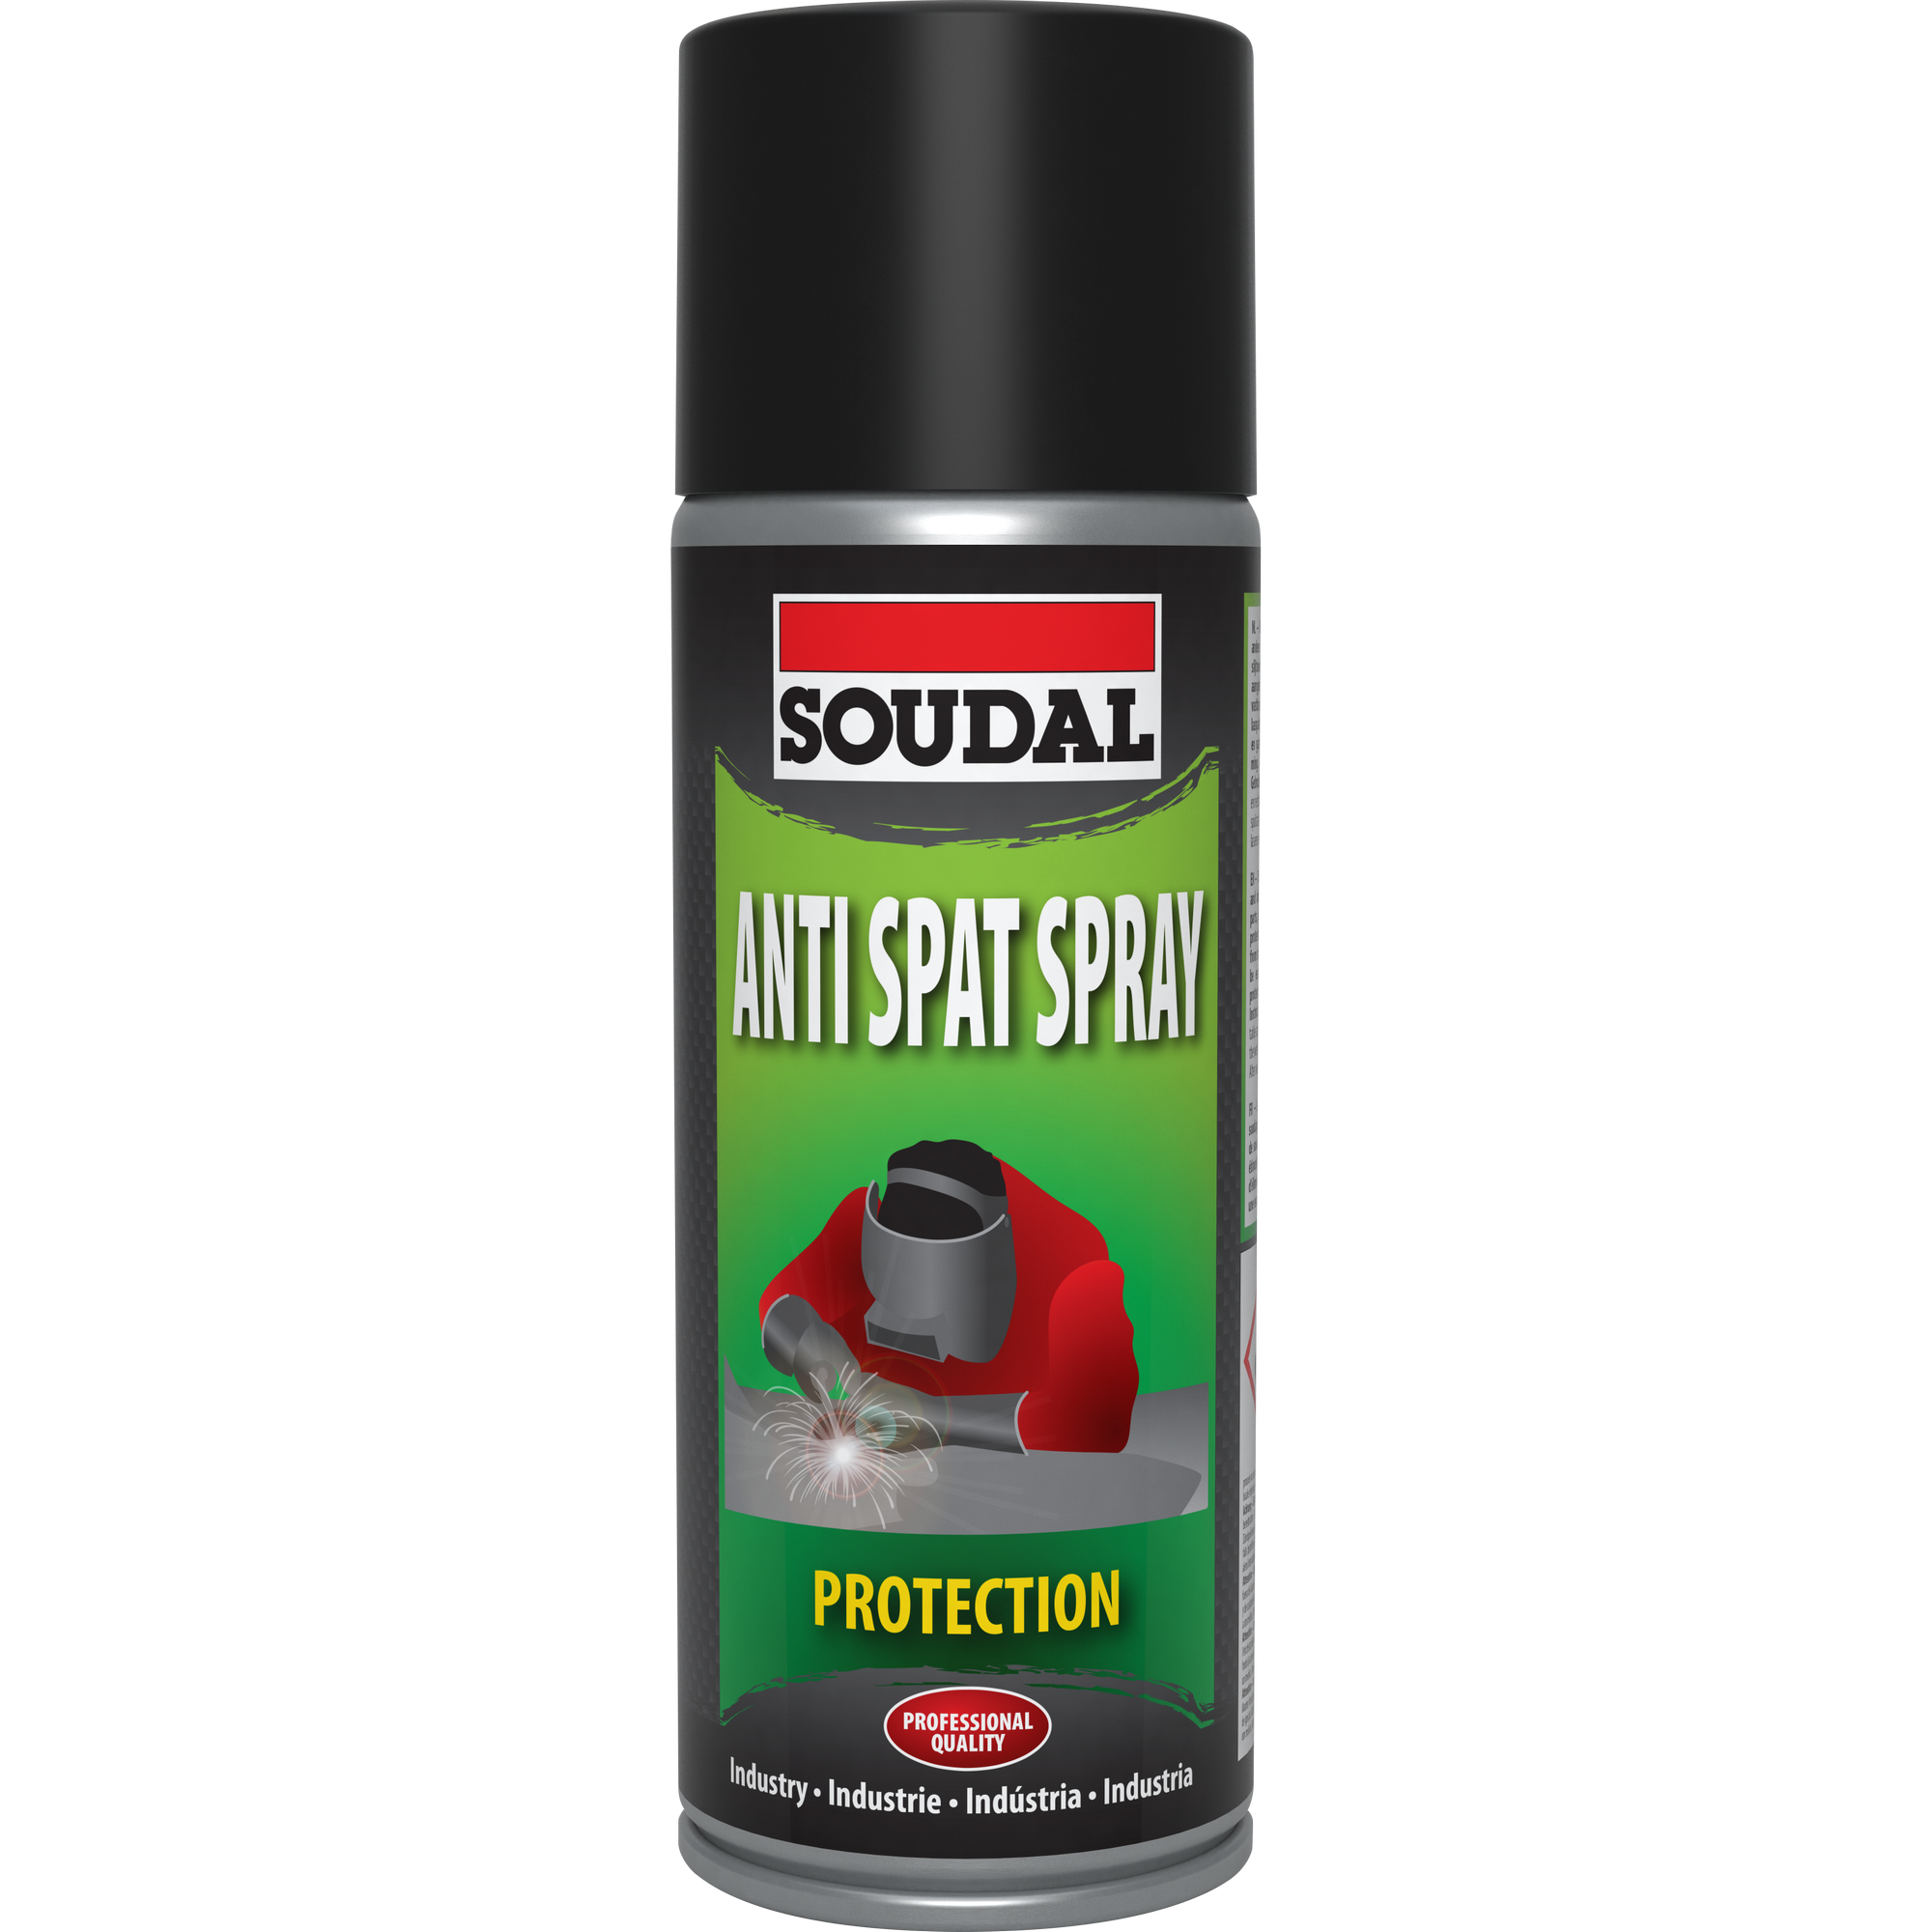 Anti Spat Spray 400 ml für Schweißarbeiten + product picture